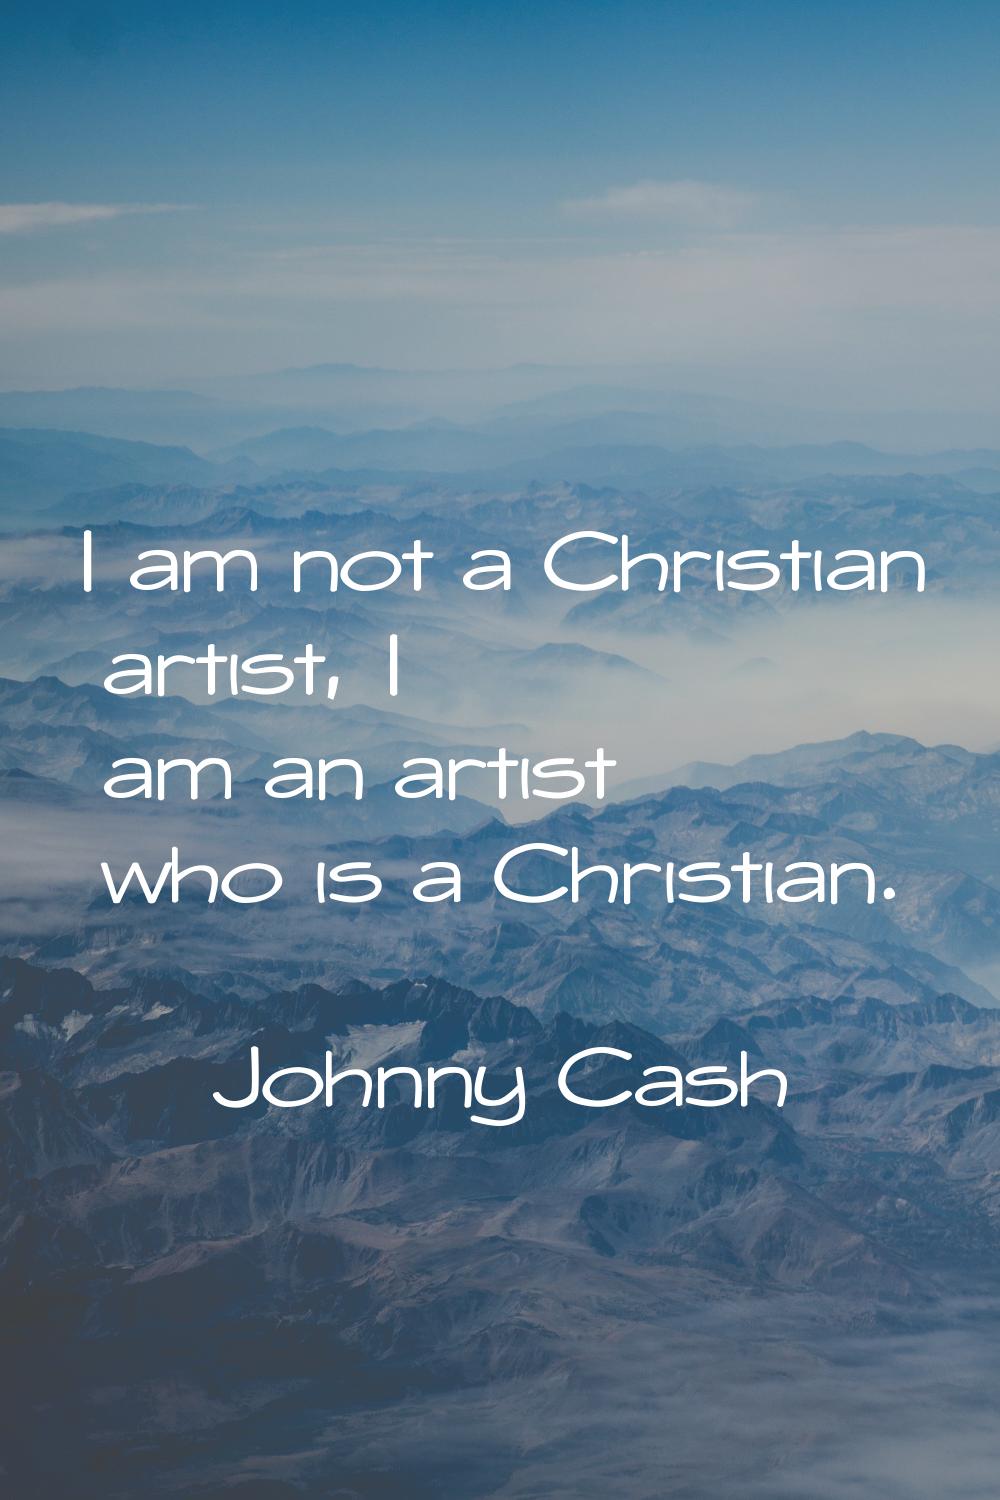 I am not a Christian artist, I am an artist who is a Christian.